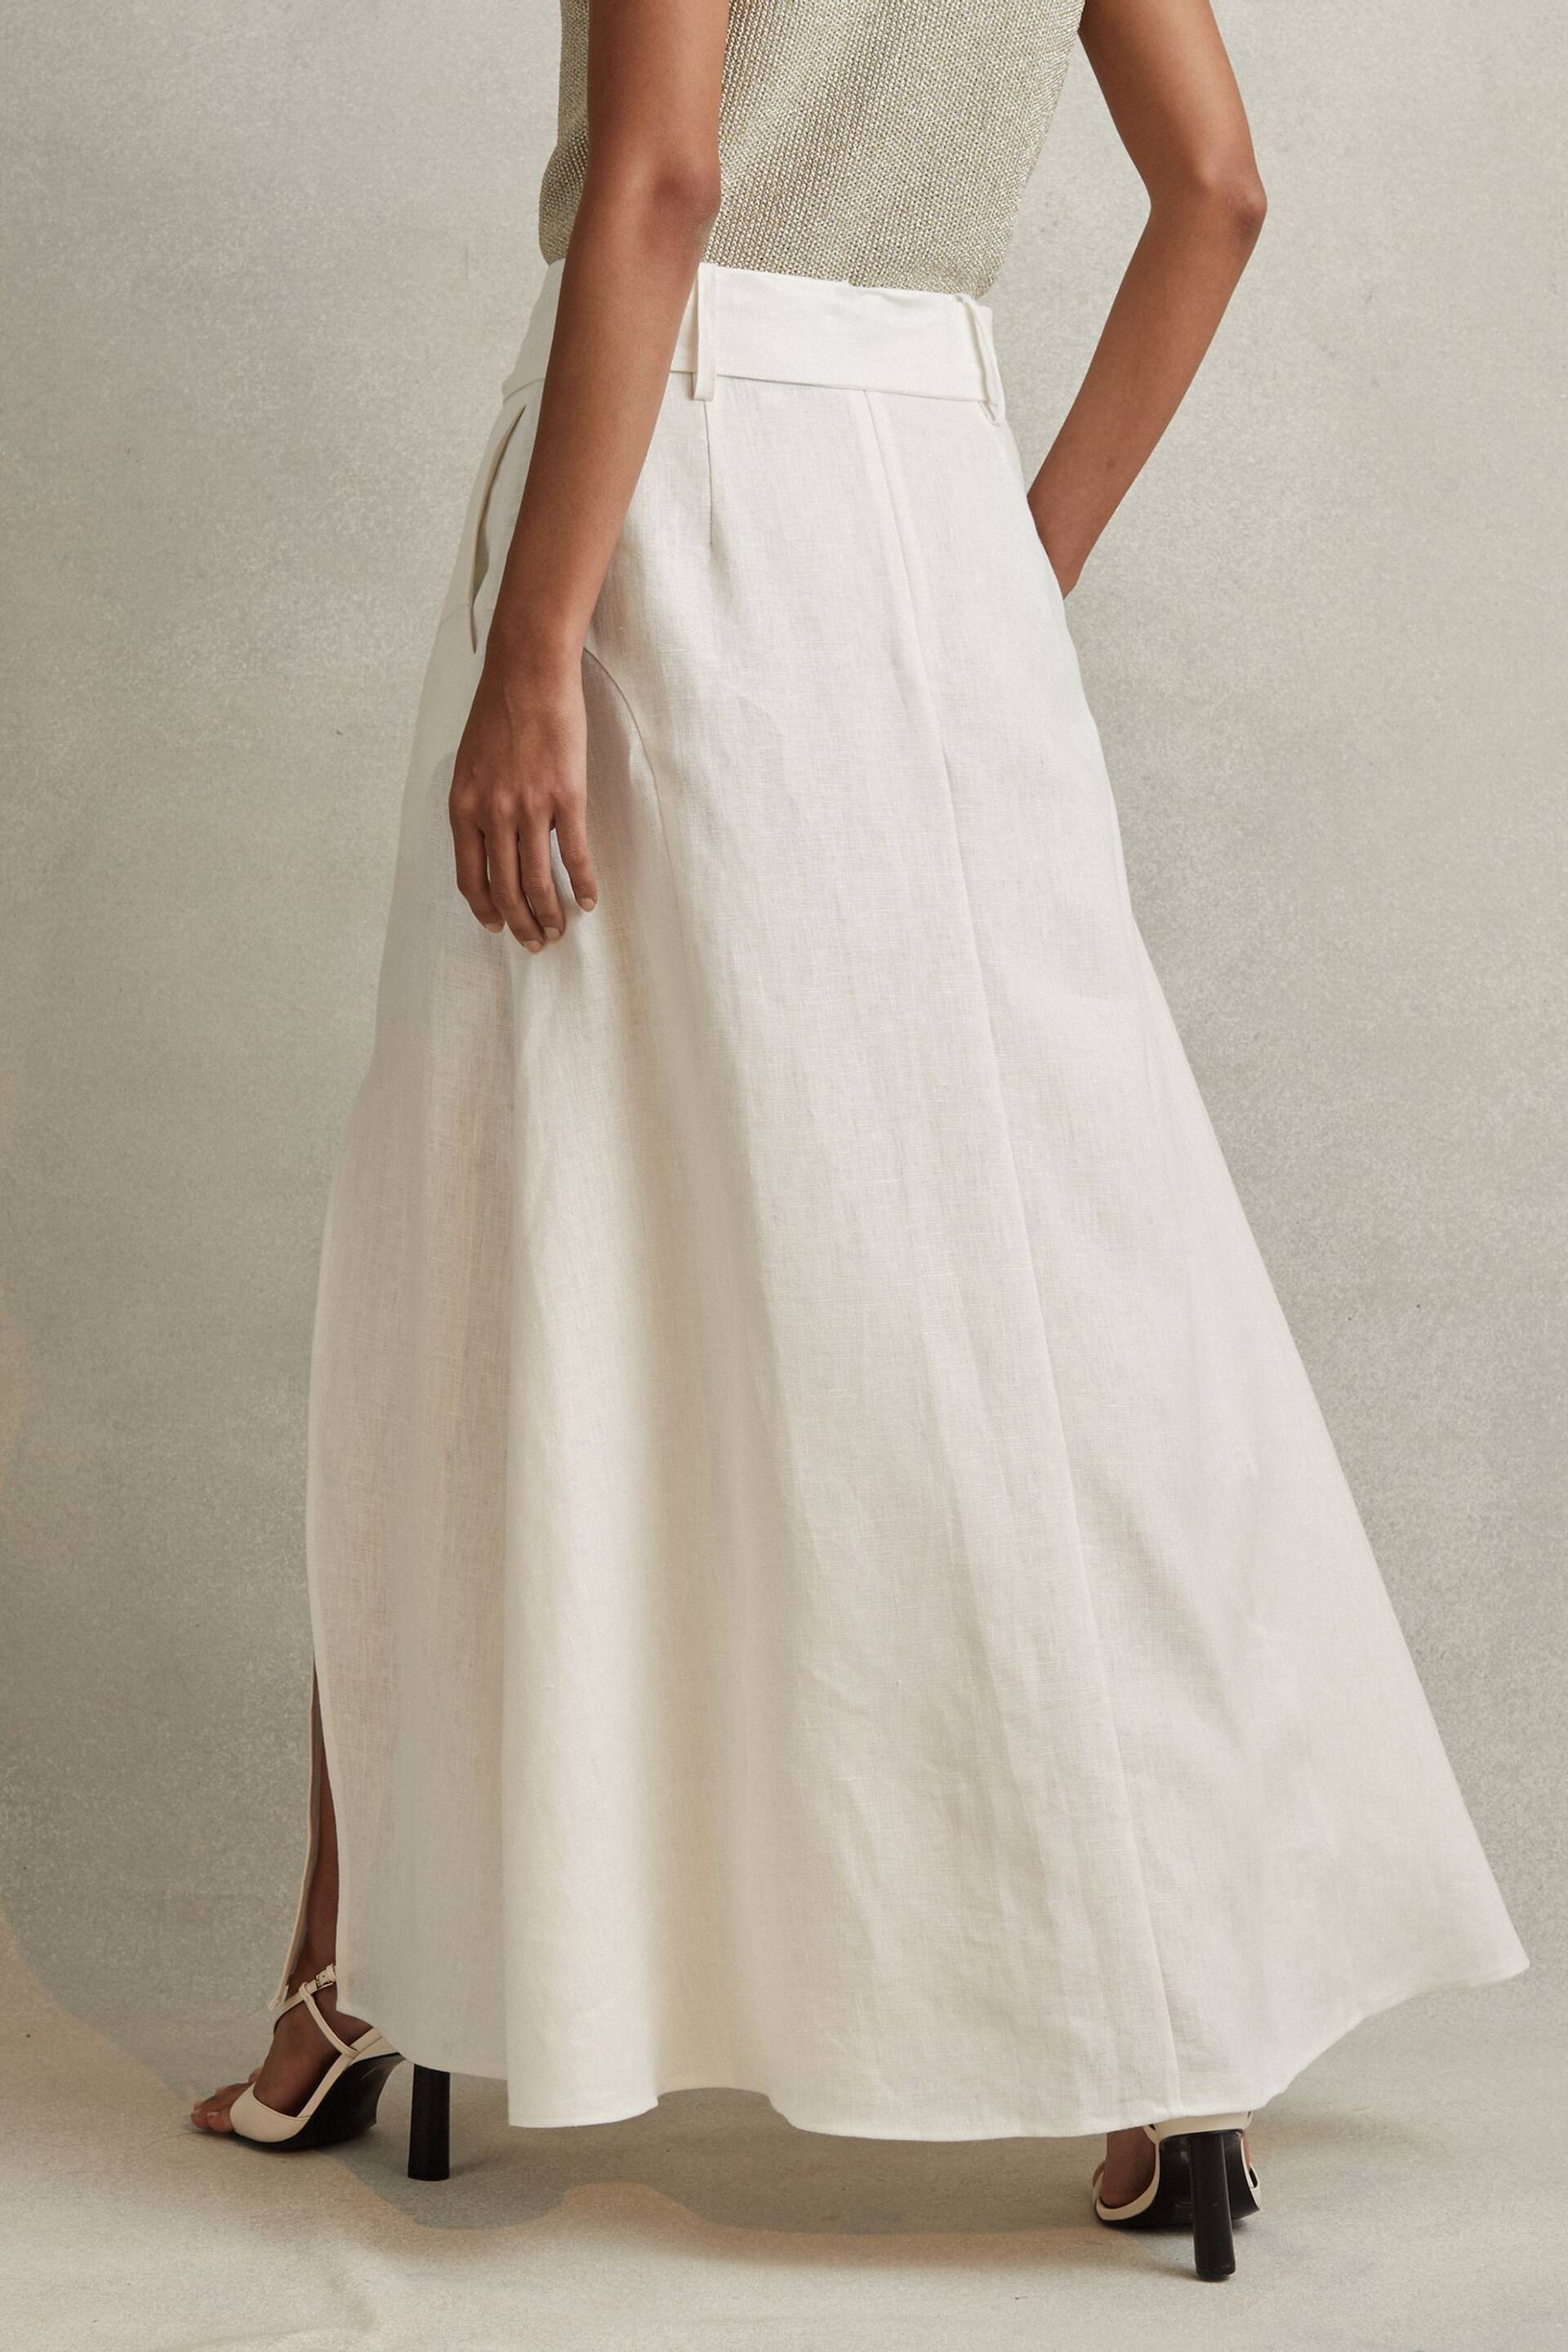 Reiss White Abigail High Rise Linen Maxi Skirt - Image 5 of 6